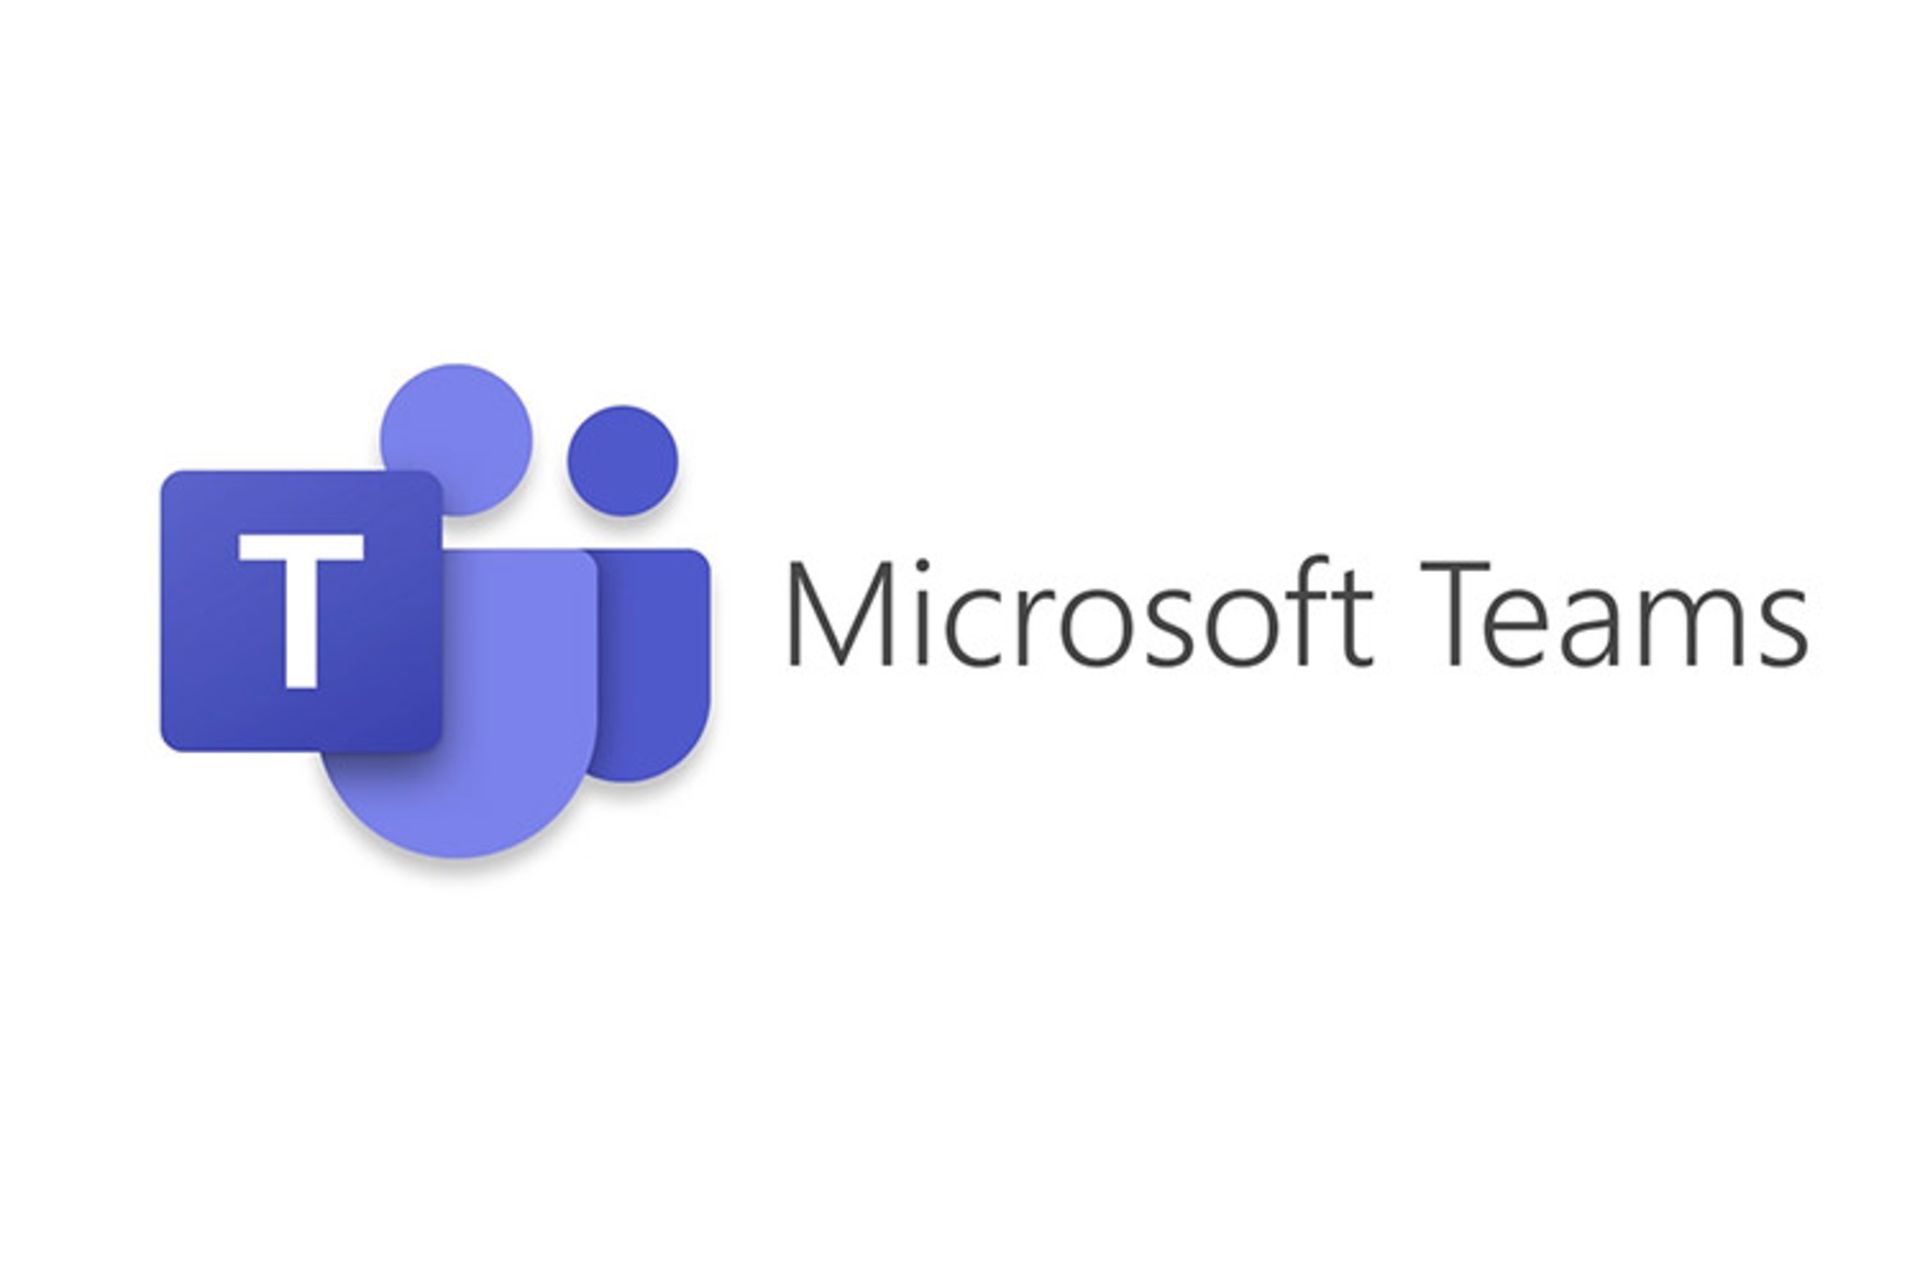 مرجع متخصصين ايران مايكروسافت تيمز / microsoft teams